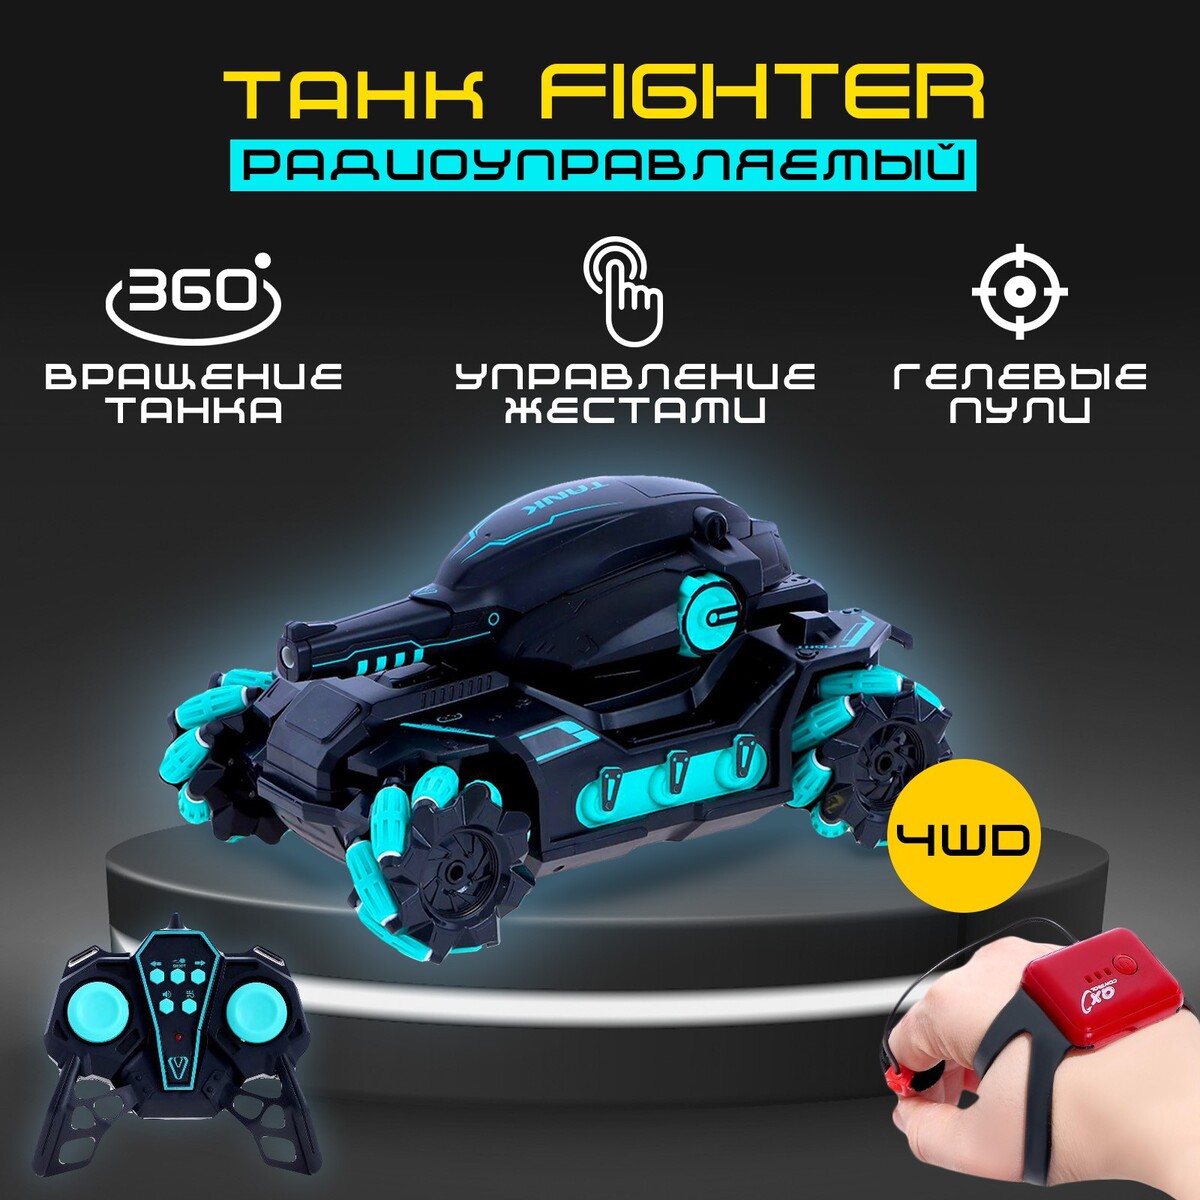 Танк радиоуправляемый fighter, 4wd, управление жестами, стреляет гелевыми пулями, цвет черно-синий wl toys радиоуправляемый квадрокоптер танк fpv